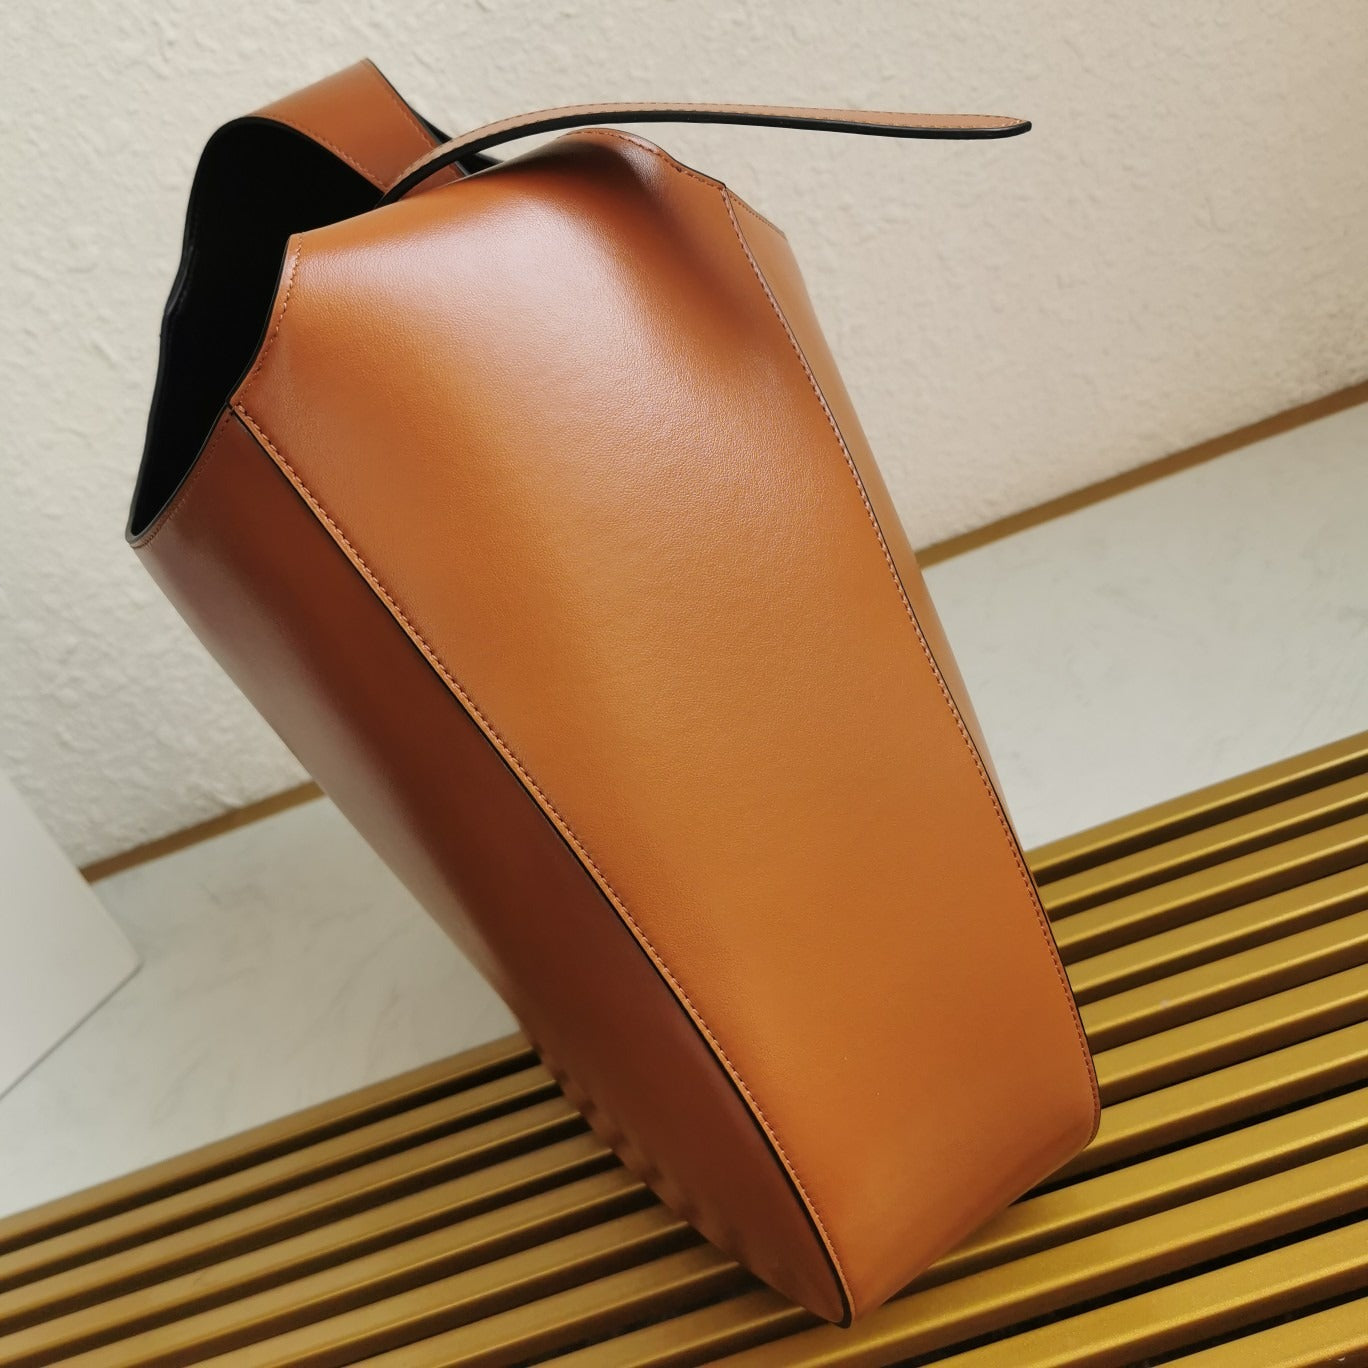 Cognac Leather Shoulder Bag